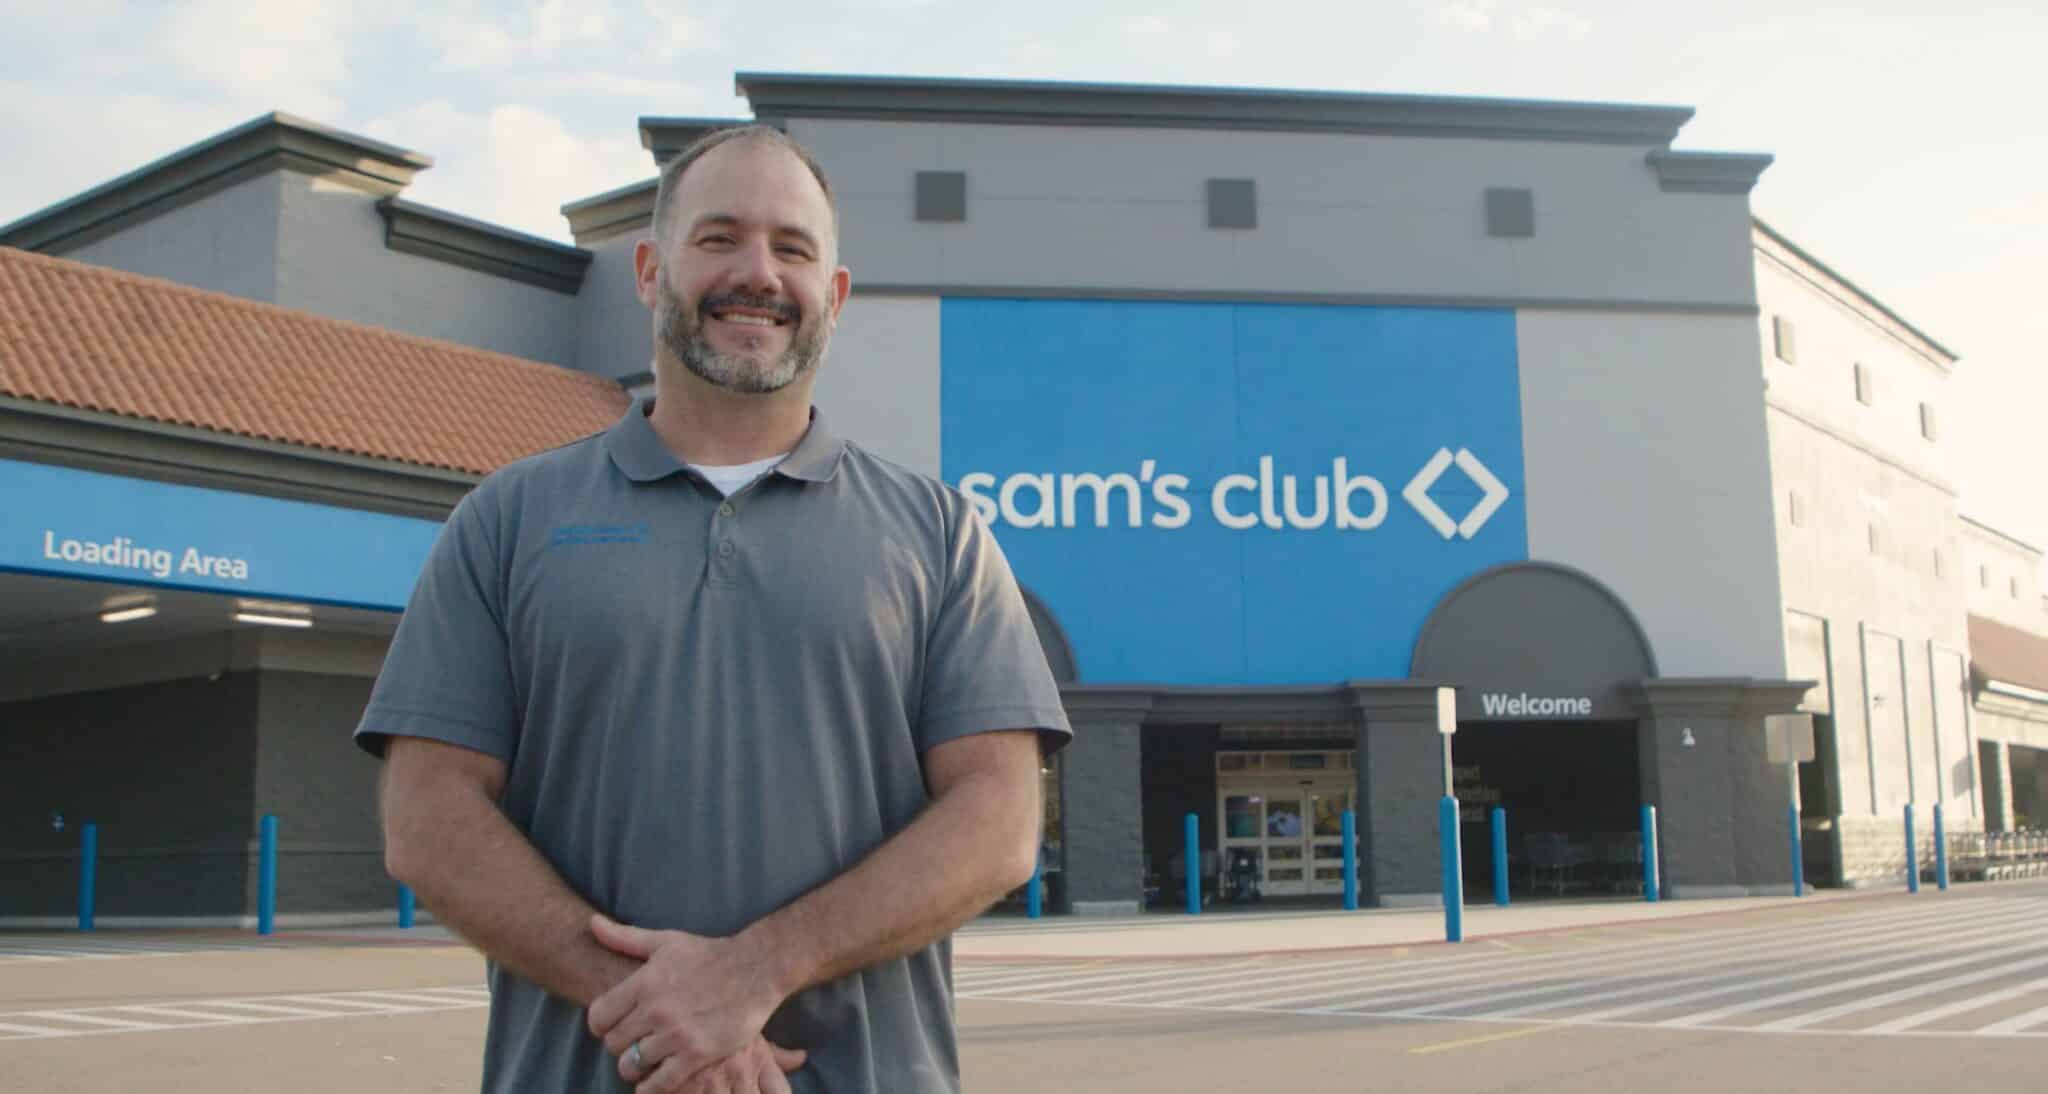 Sam's Club, Purpose Driven Brand